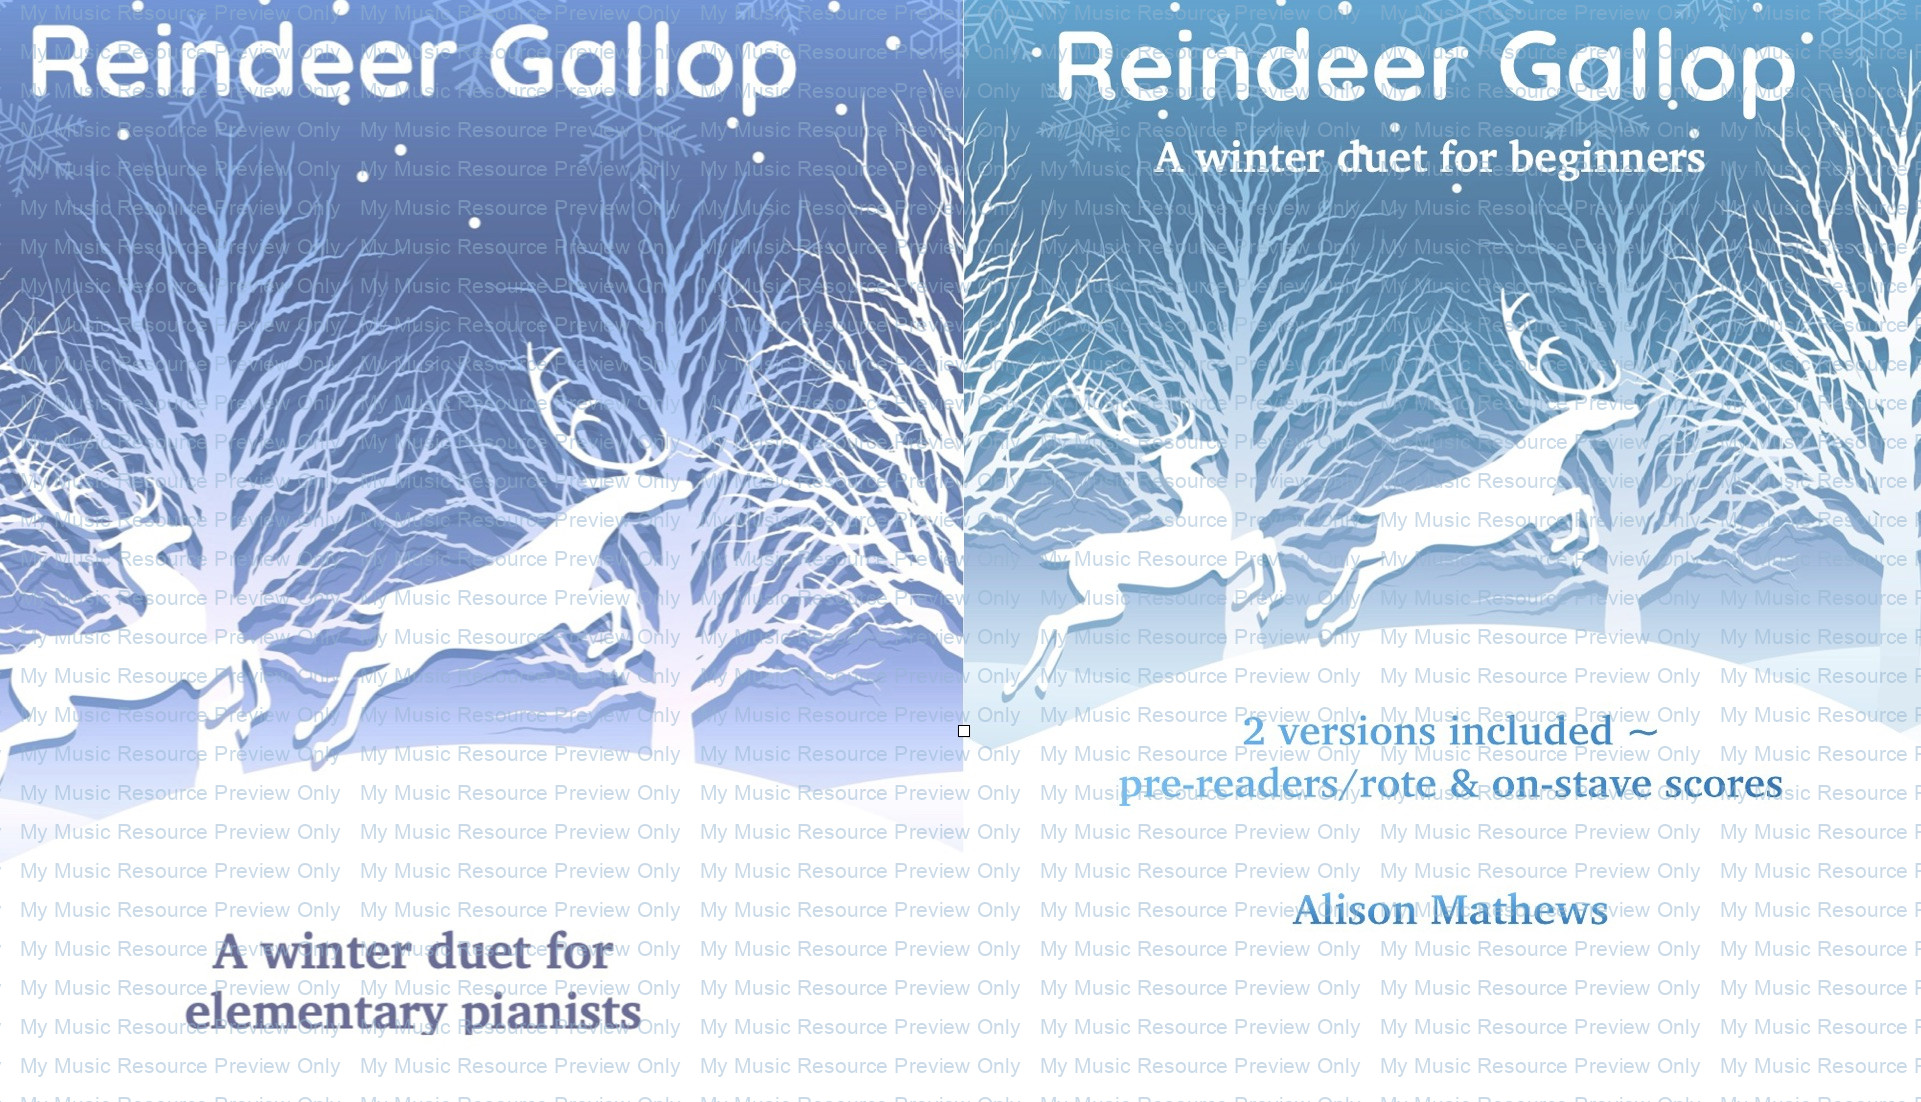 Reindeer Gallop piano duets